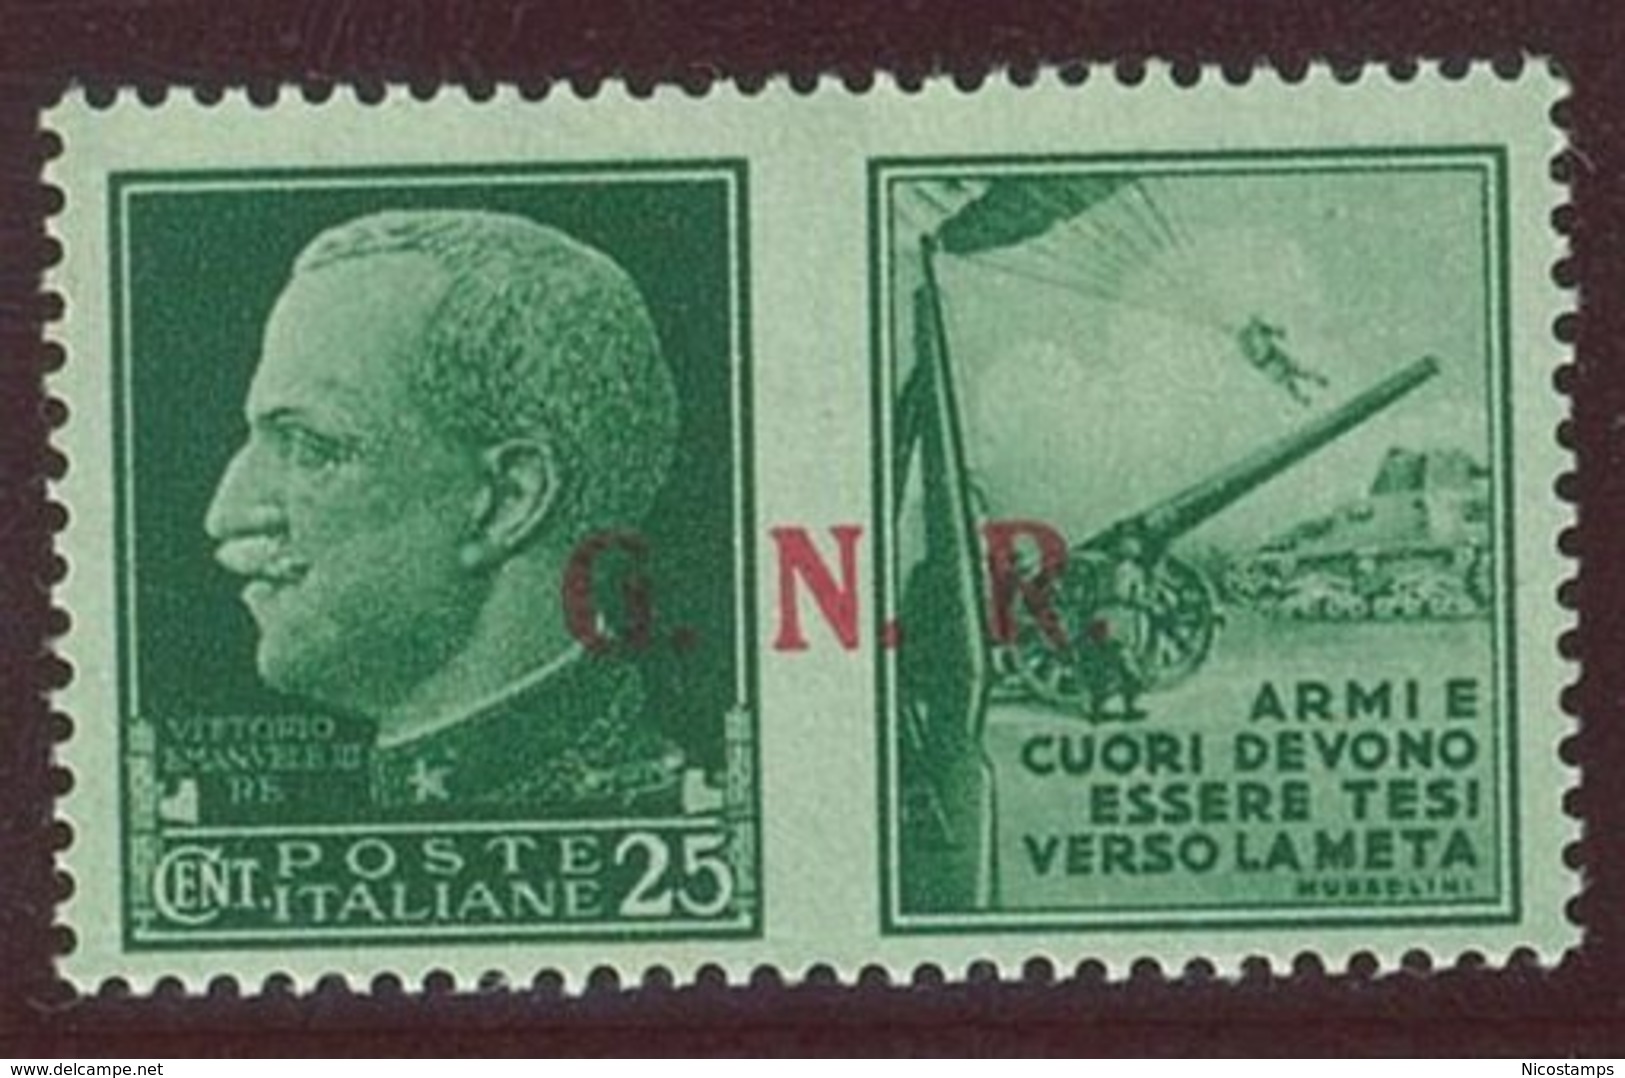 ITALIA REPUBBLICA SOCIALE ITALIANA (R.S.I.) SASS. P.G. 14/IIIef  NUOVO - Propaganda Di Guerra